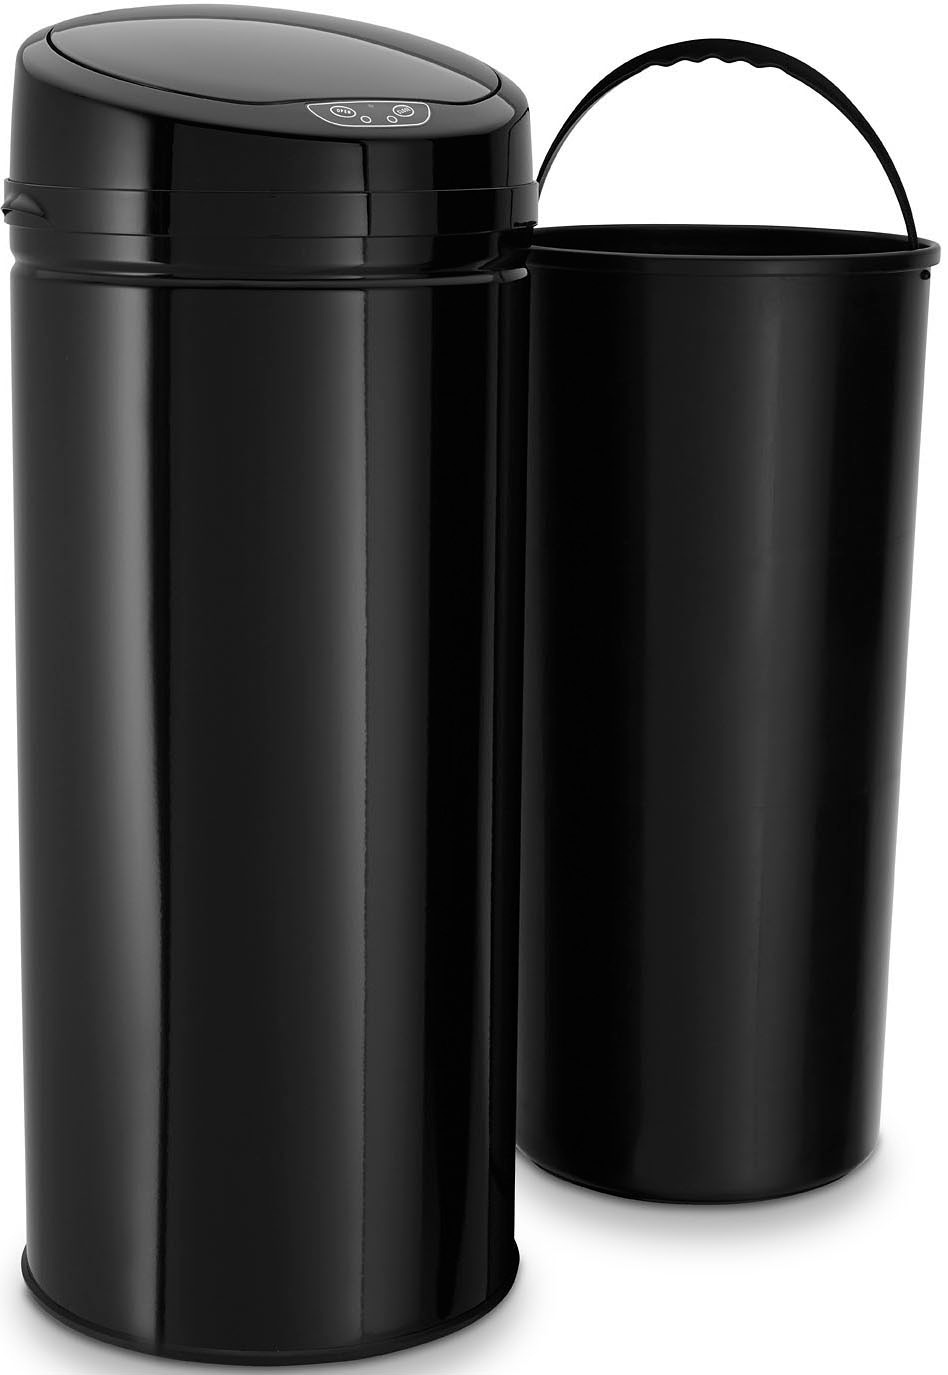 ECHTWERK Mülleimer »INOX BLACK«, 1 Behälter, Infrarot-Sensor, Korpus aus Edelstahl, Fassungsvermögen 42 Liter